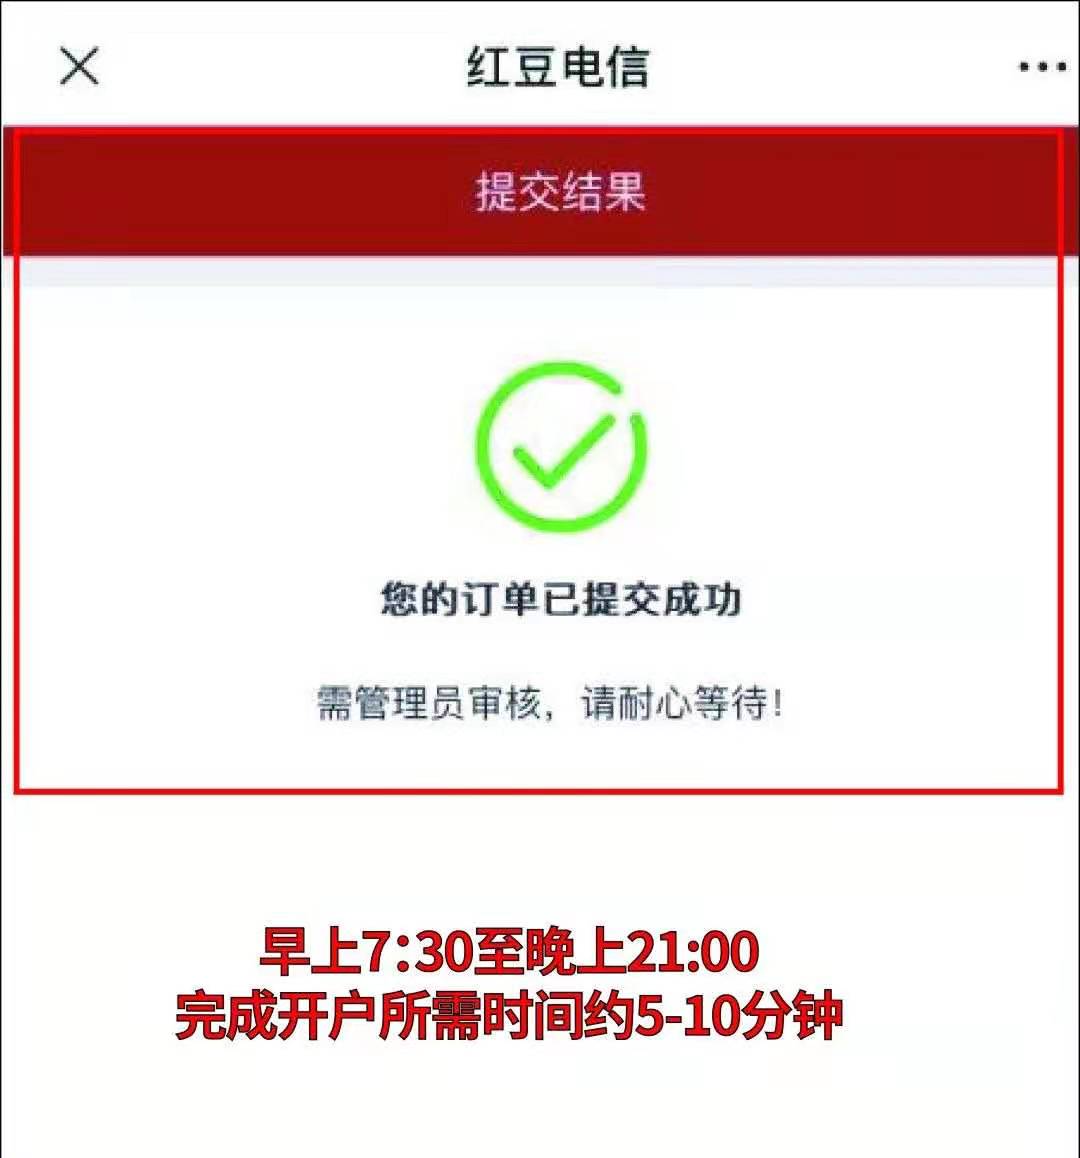 红豆卡开户激活实名认证流程——浦江通讯